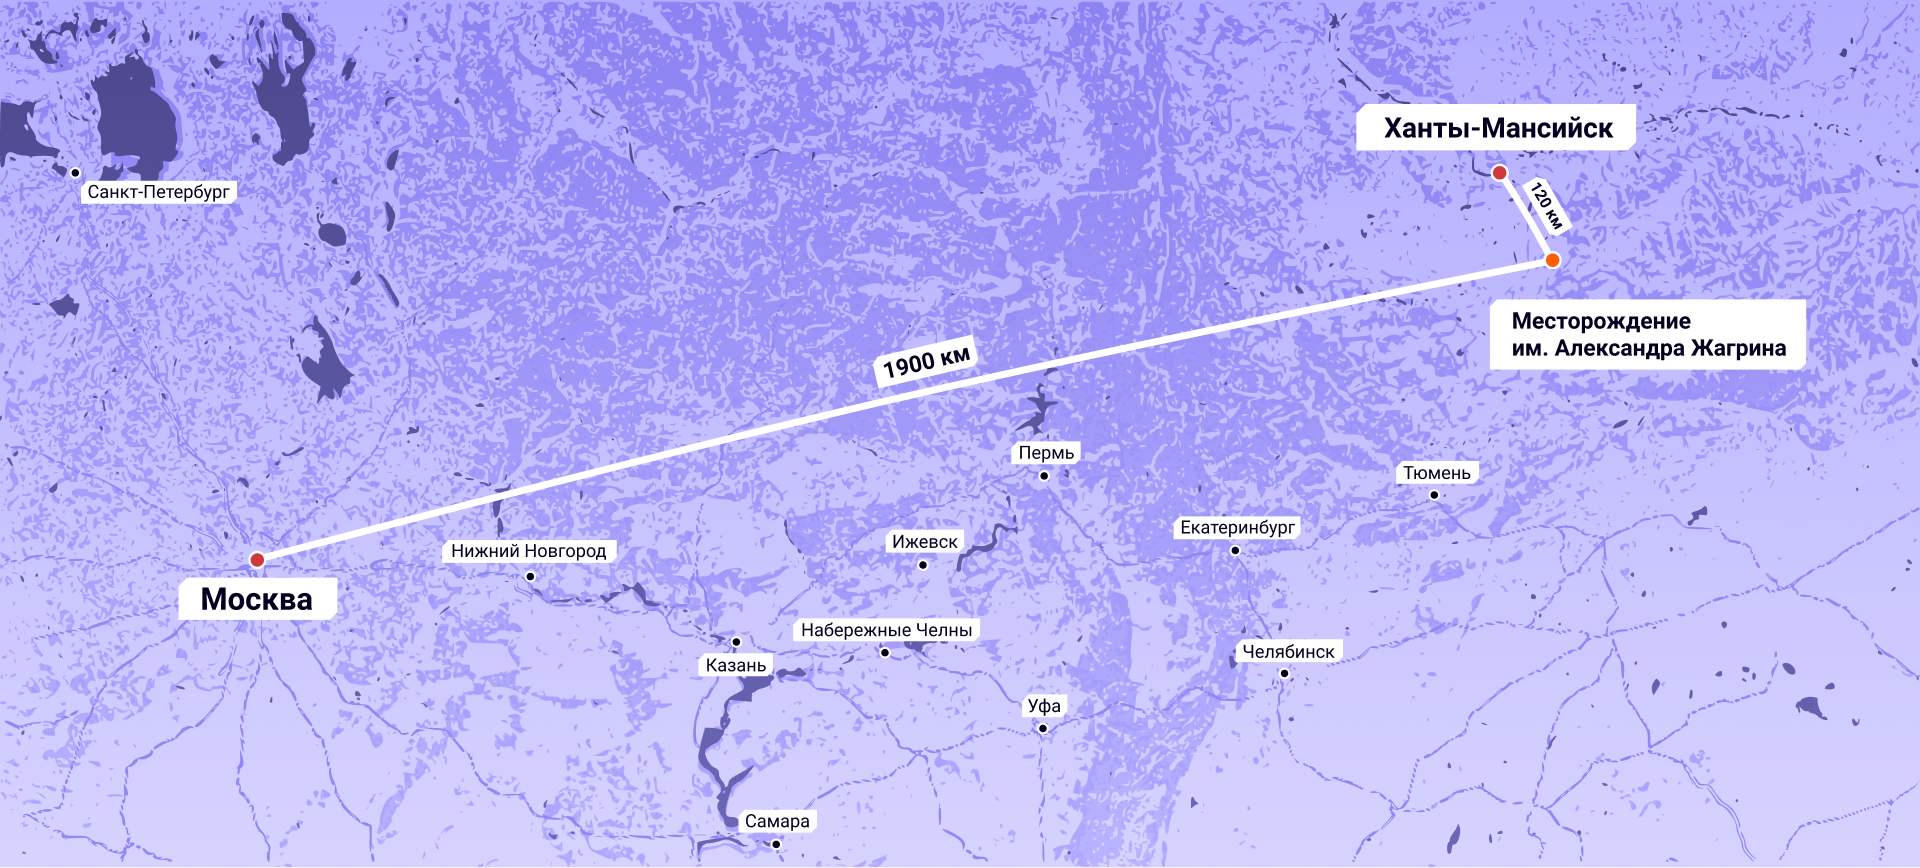 Ханты-Мансийск месторождения Жагрино на карте. Месторождение им Жагрина на карте.